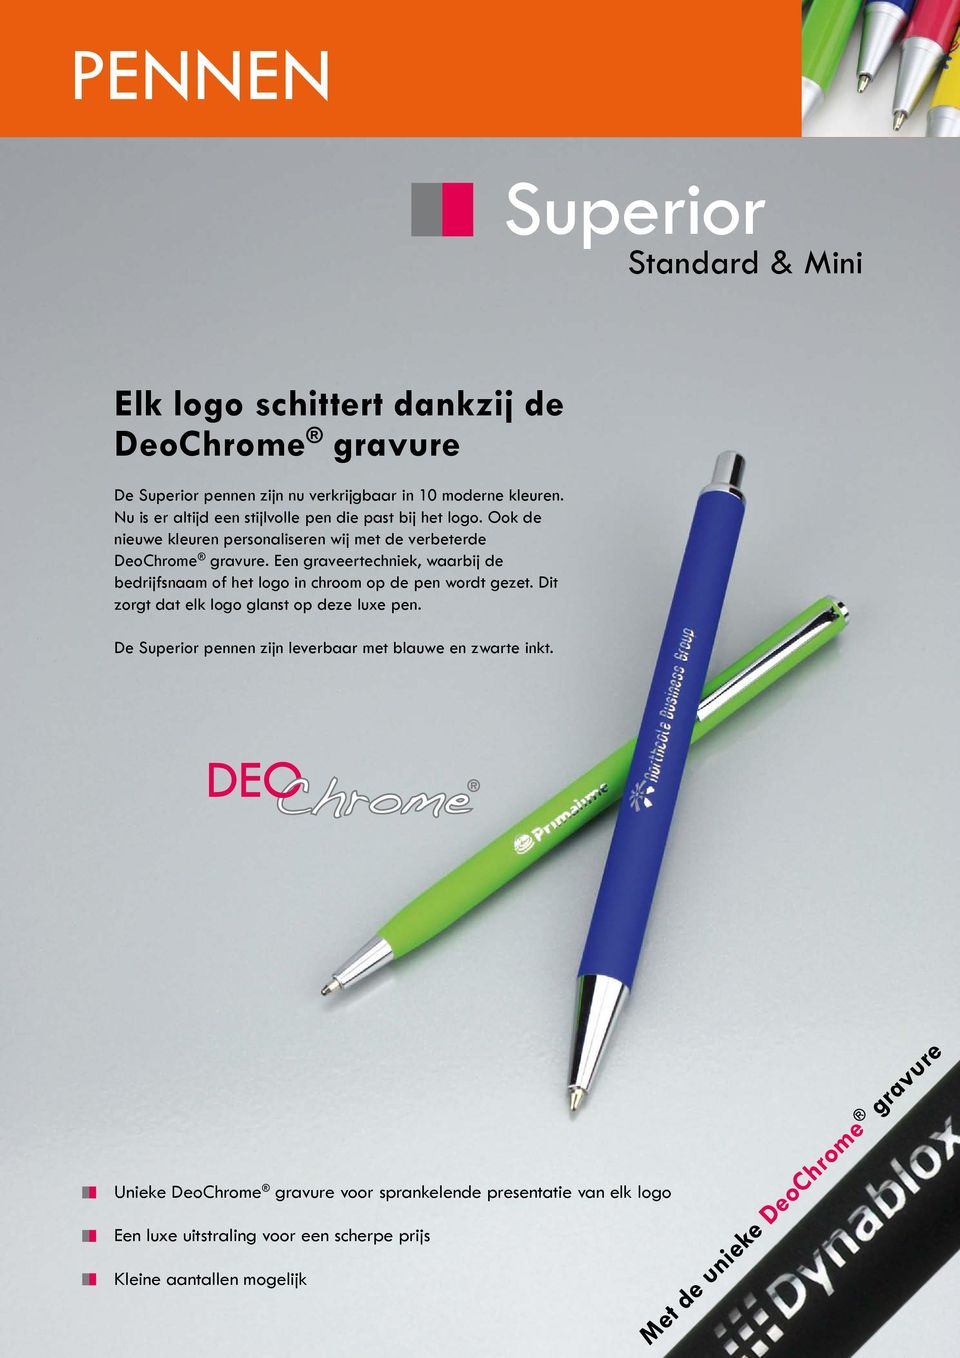 Een graveertechniek, waarbij de bedrijfsnaam of het logo in chroom op de pen wordt gezet. Dit zorgt dat elk logo glanst op deze luxe pen.